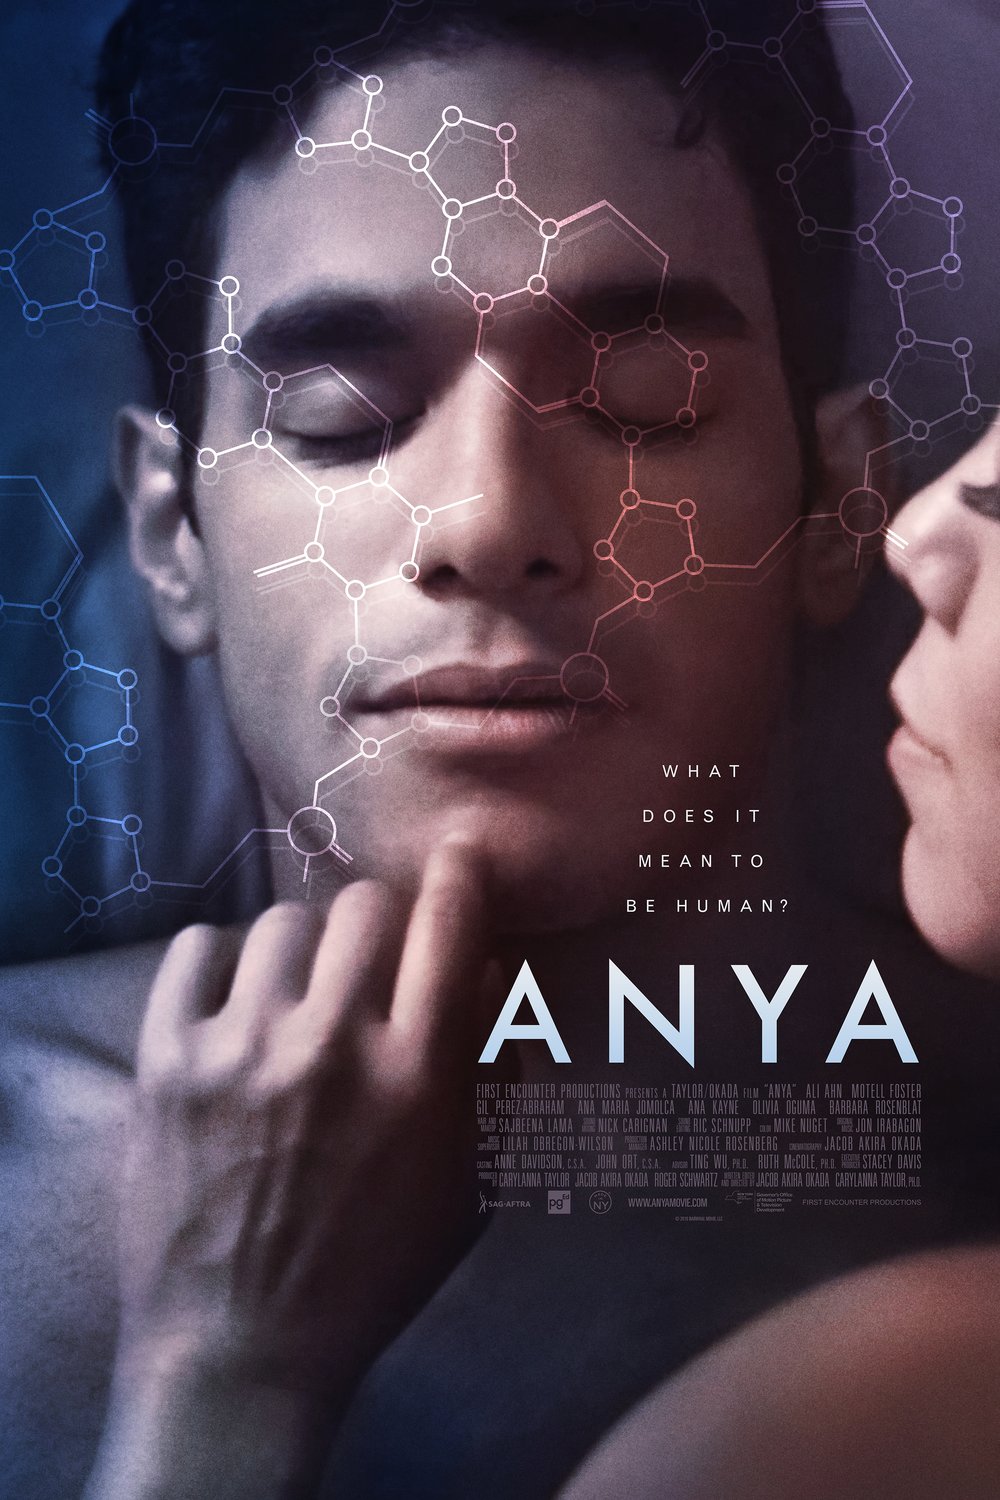 Spanish poster of the movie Anya